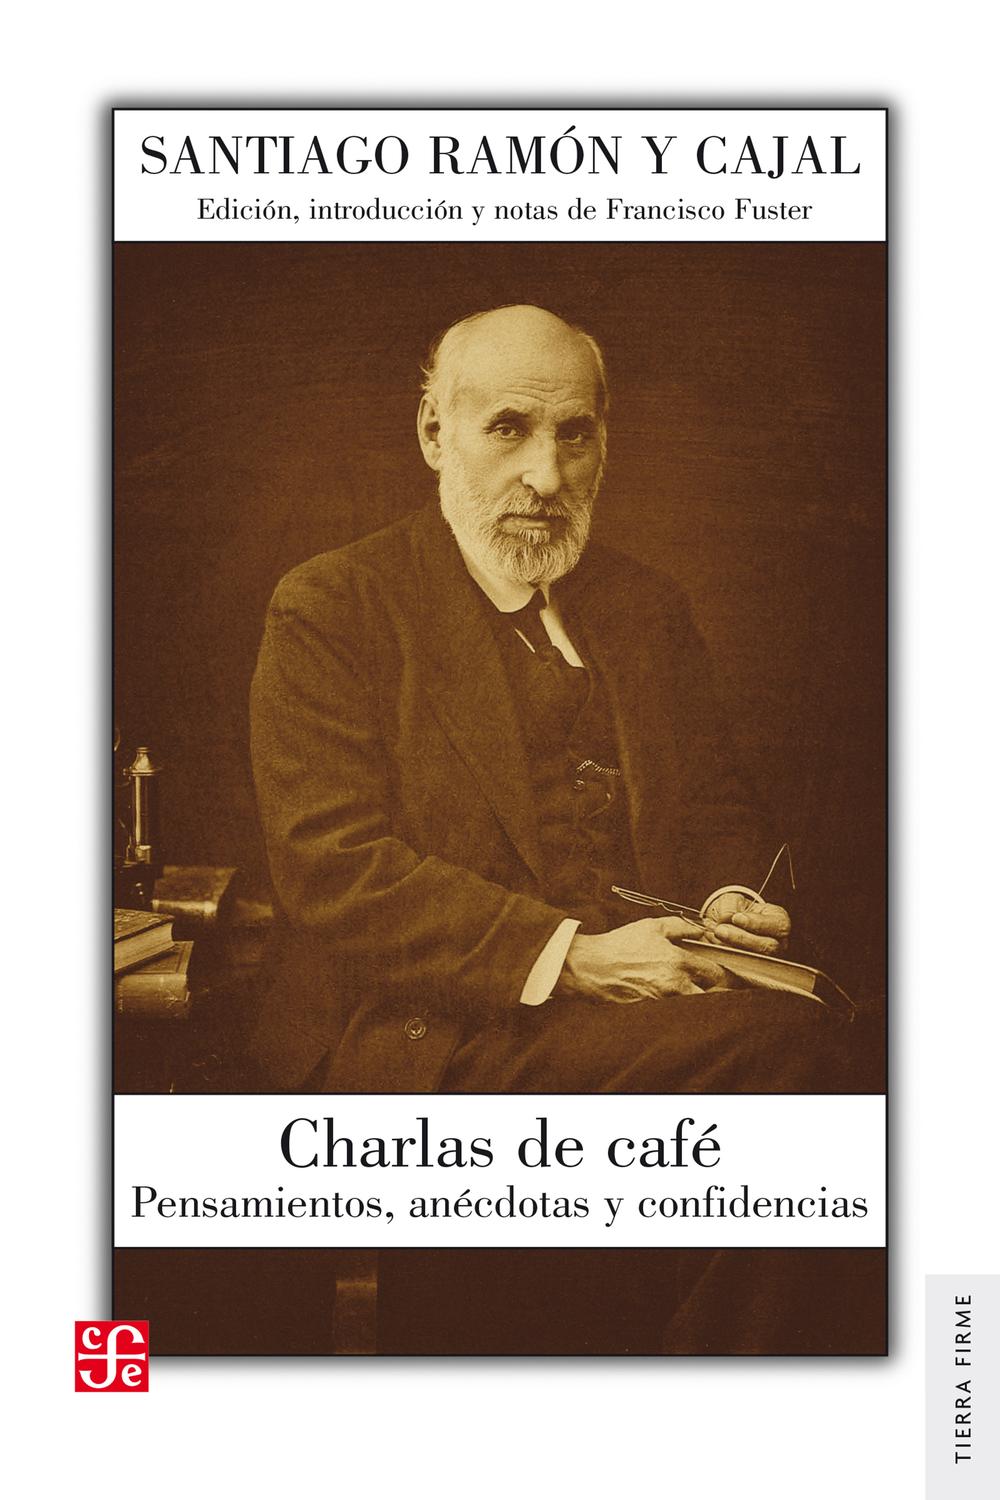 Charlas de café - Santiago Ramón y Cajal, Francisco Fuster